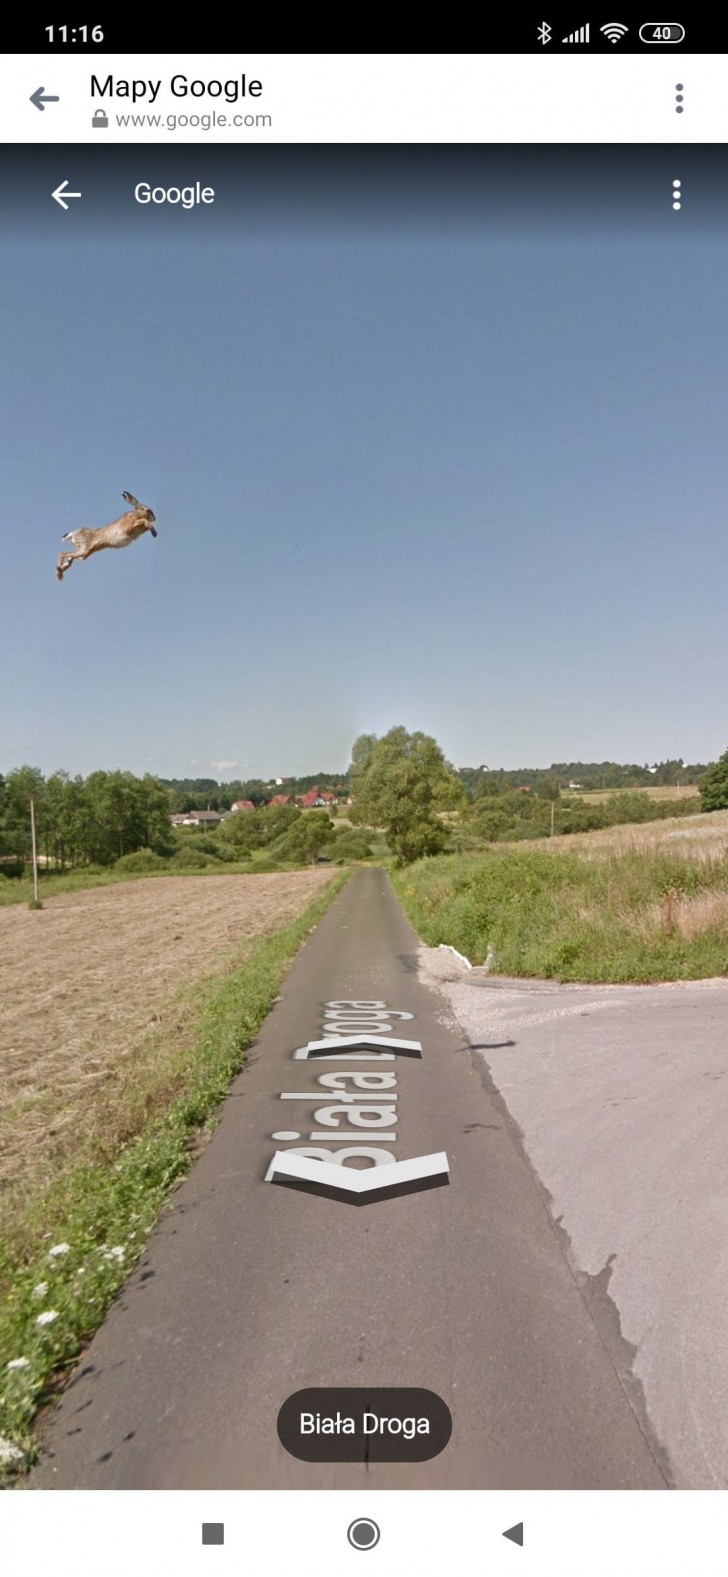 6. Wenn Google Street View in direkten Kontakt mit Wildtieren kommt!